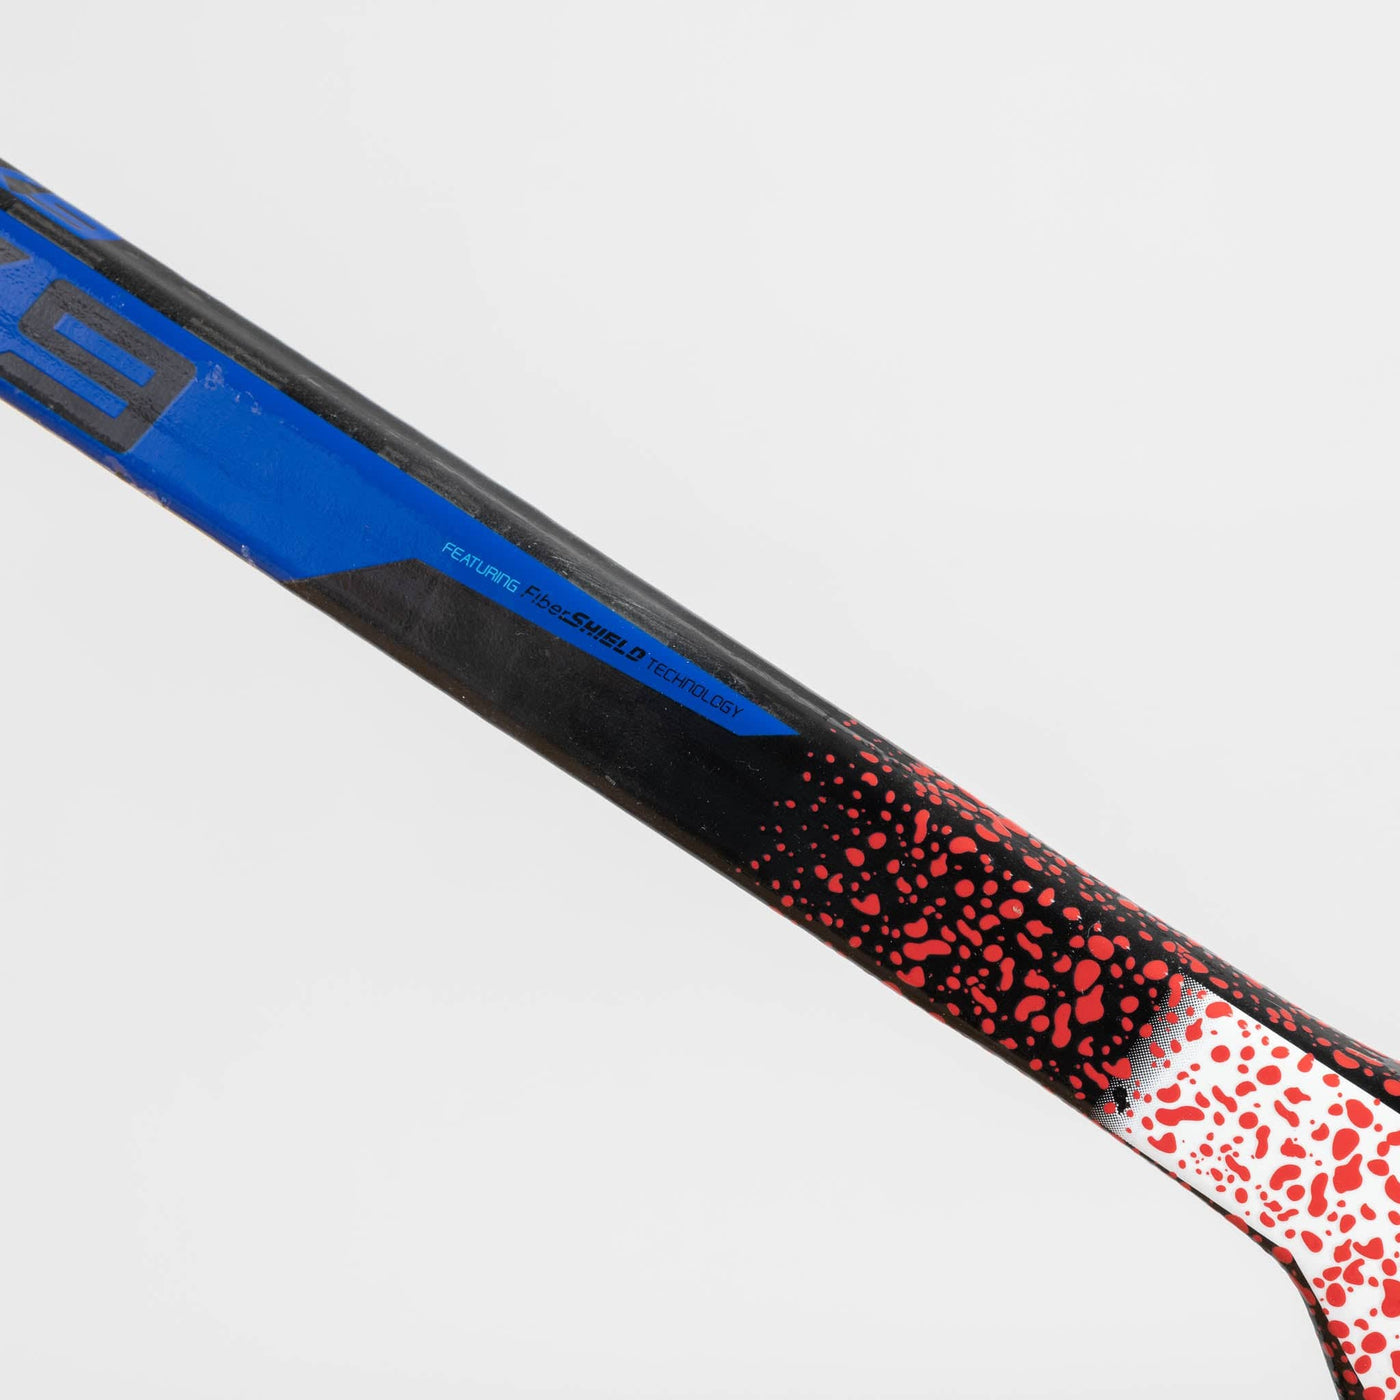 TRUE AX9 Senior Goalie Stick - Custom Color - The Hockey Shop Source For Sports